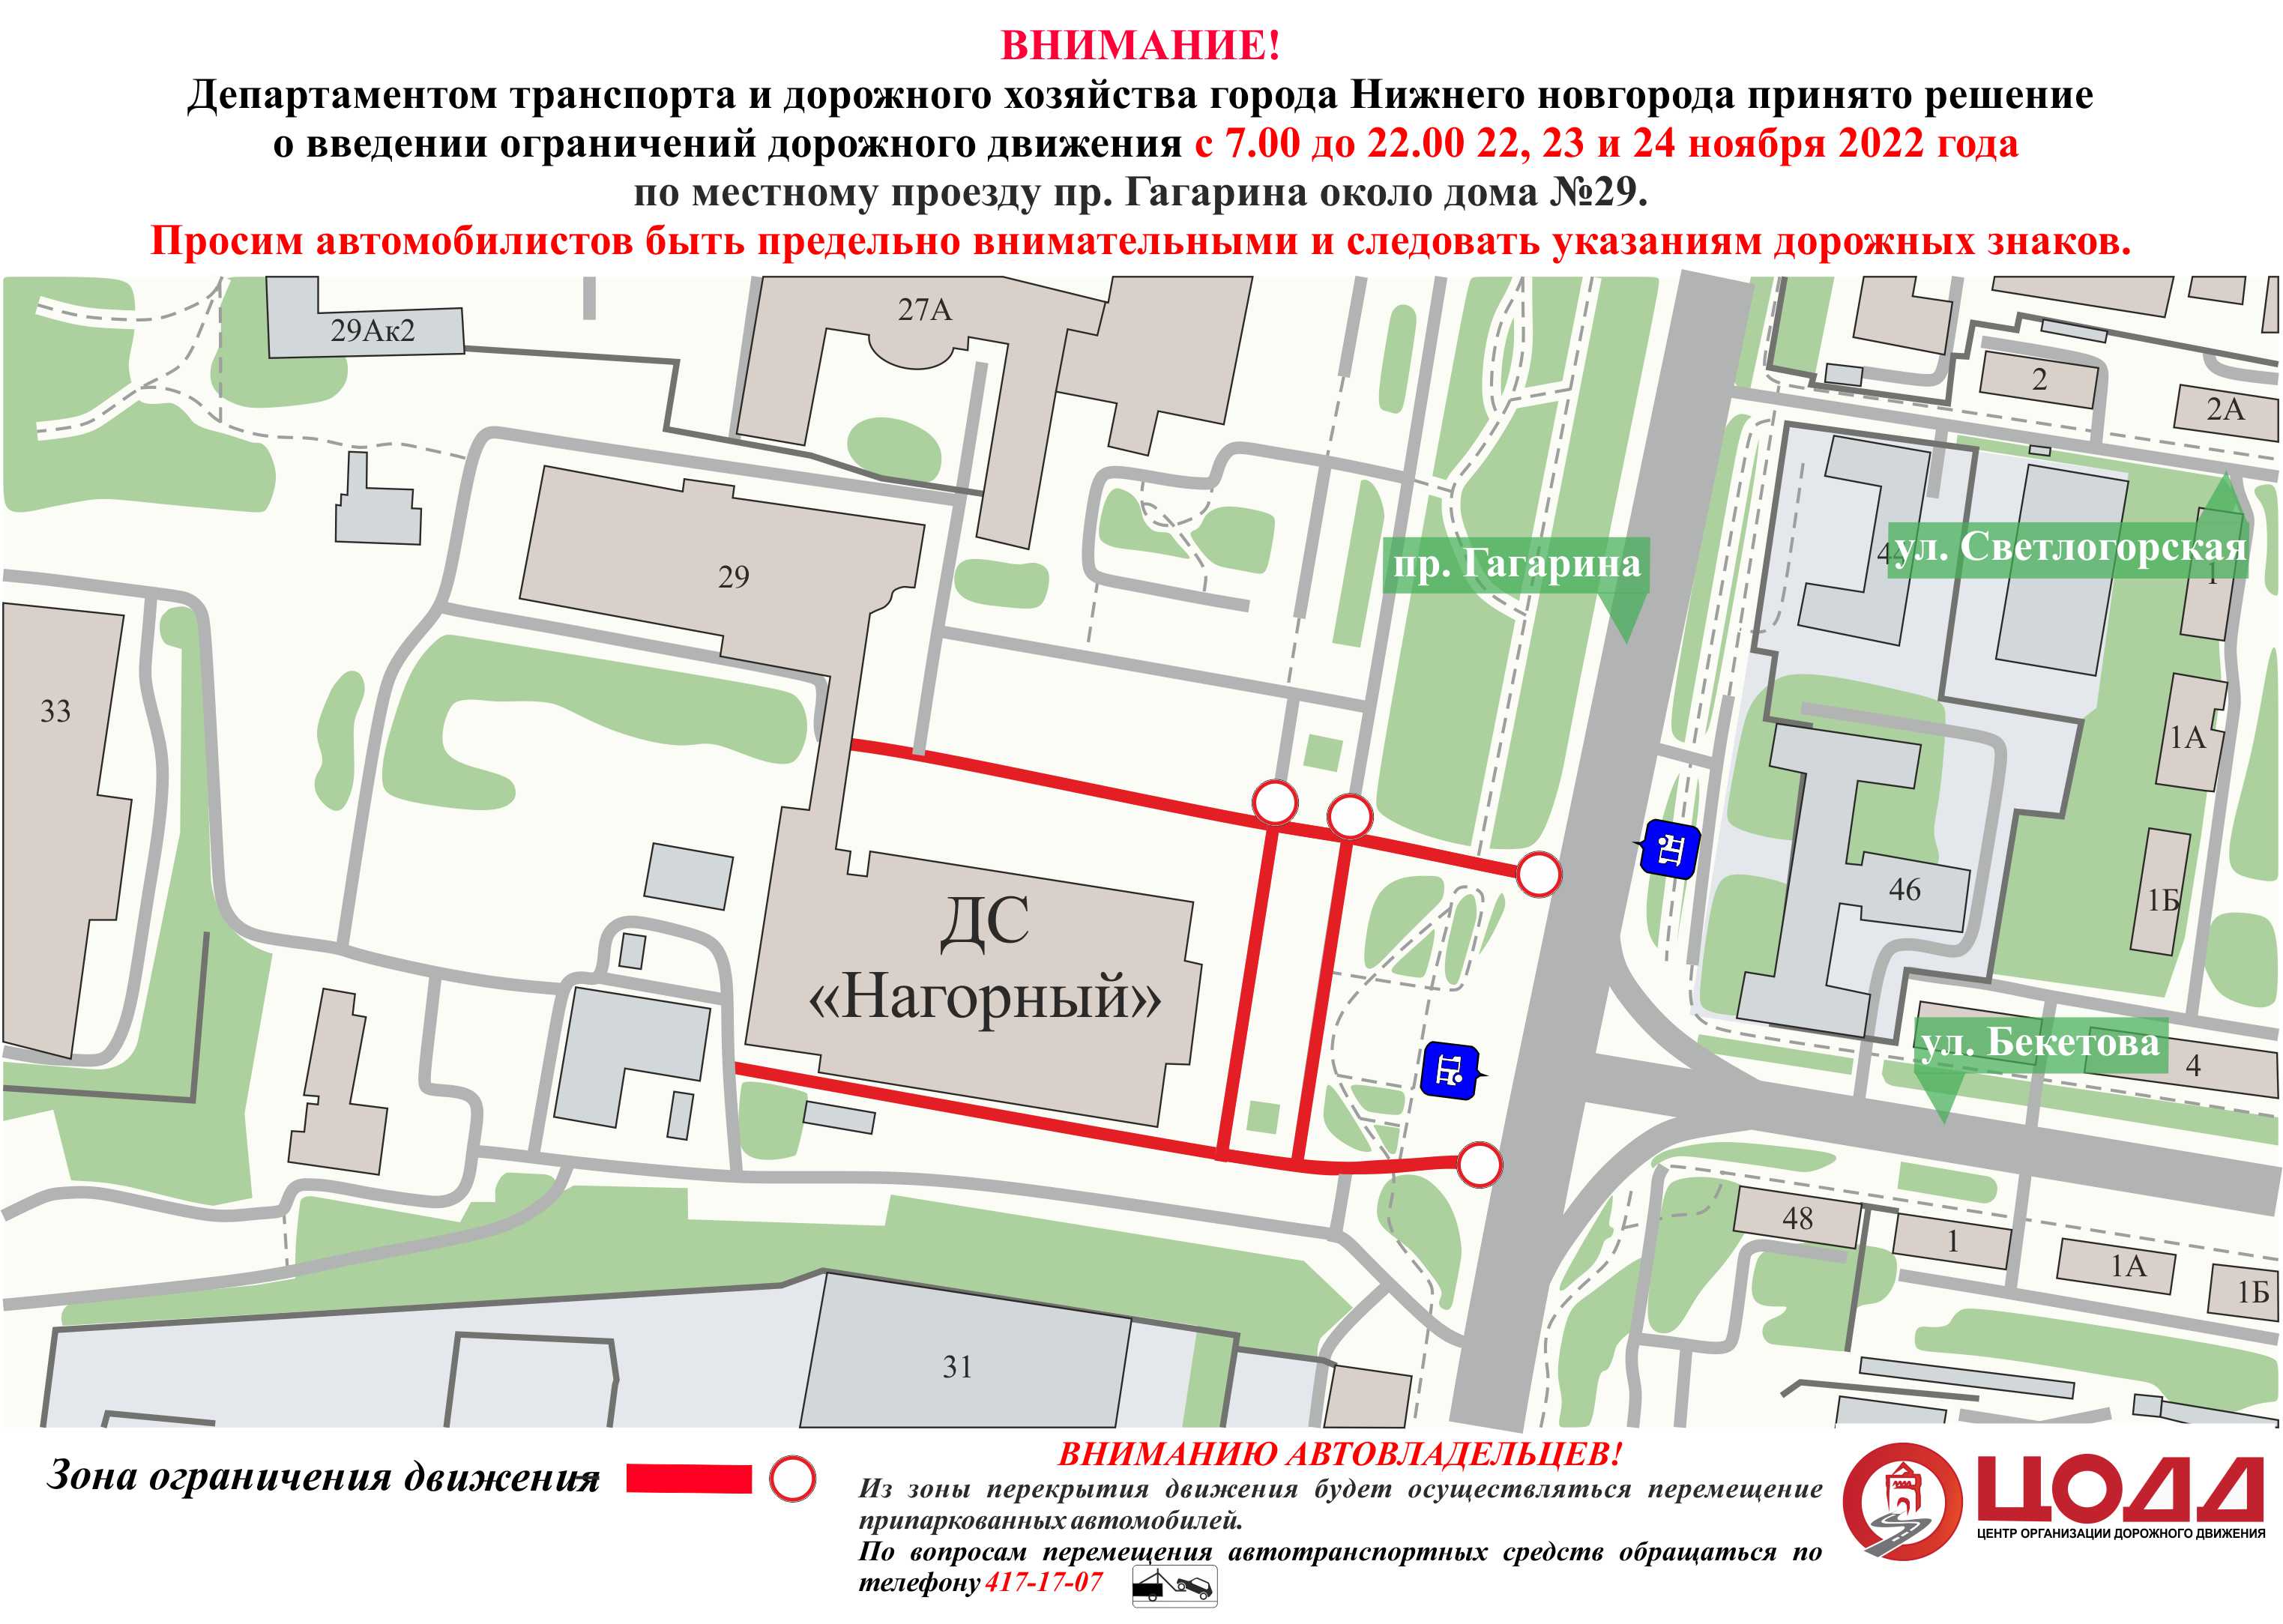 Движение будет ограничено возле Нагорного Дворца спорта в Нижнем Новгороде с 22 ноября